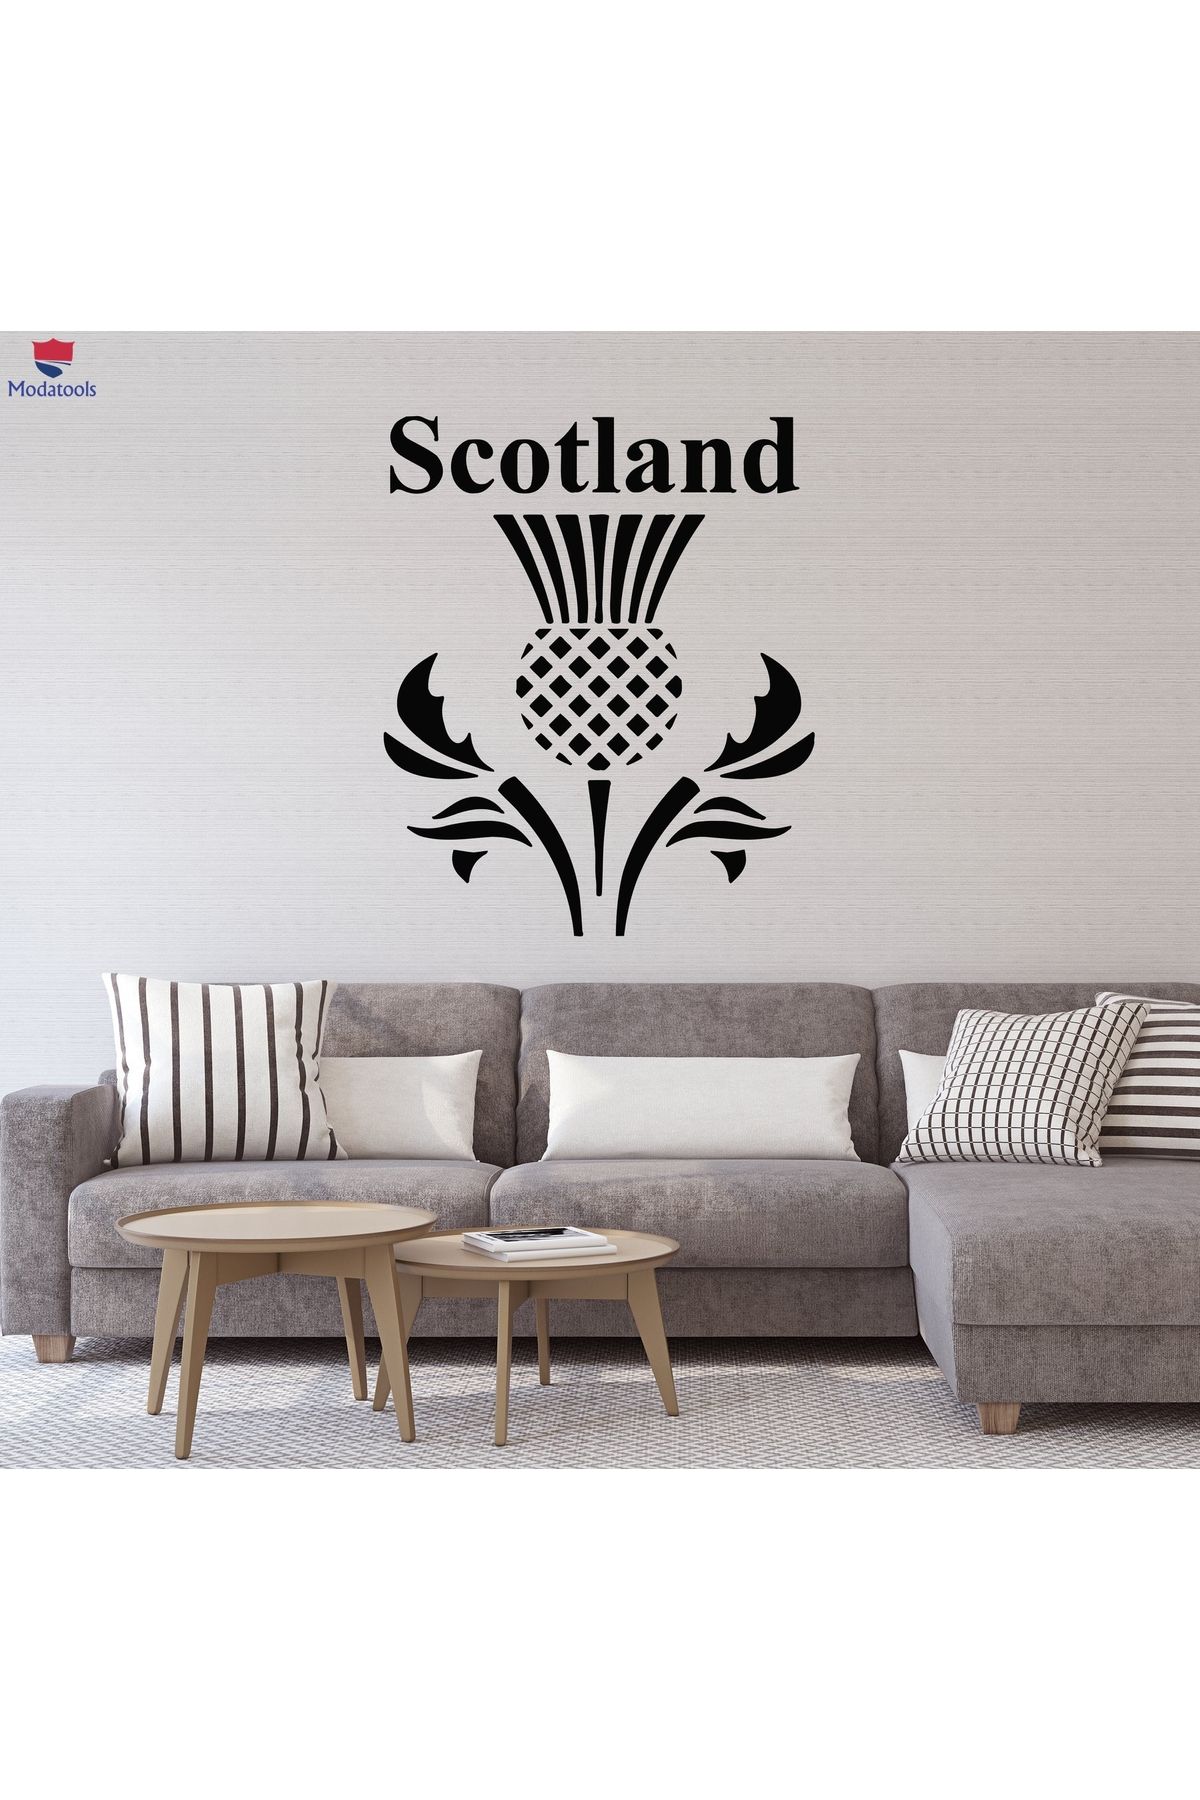 Modatools Oturma Odası, Yatak Odası Duvar Sticker İskoçya İskoç Devedikeni Çiçek Sembolü Çıkartmalar Hediyelik